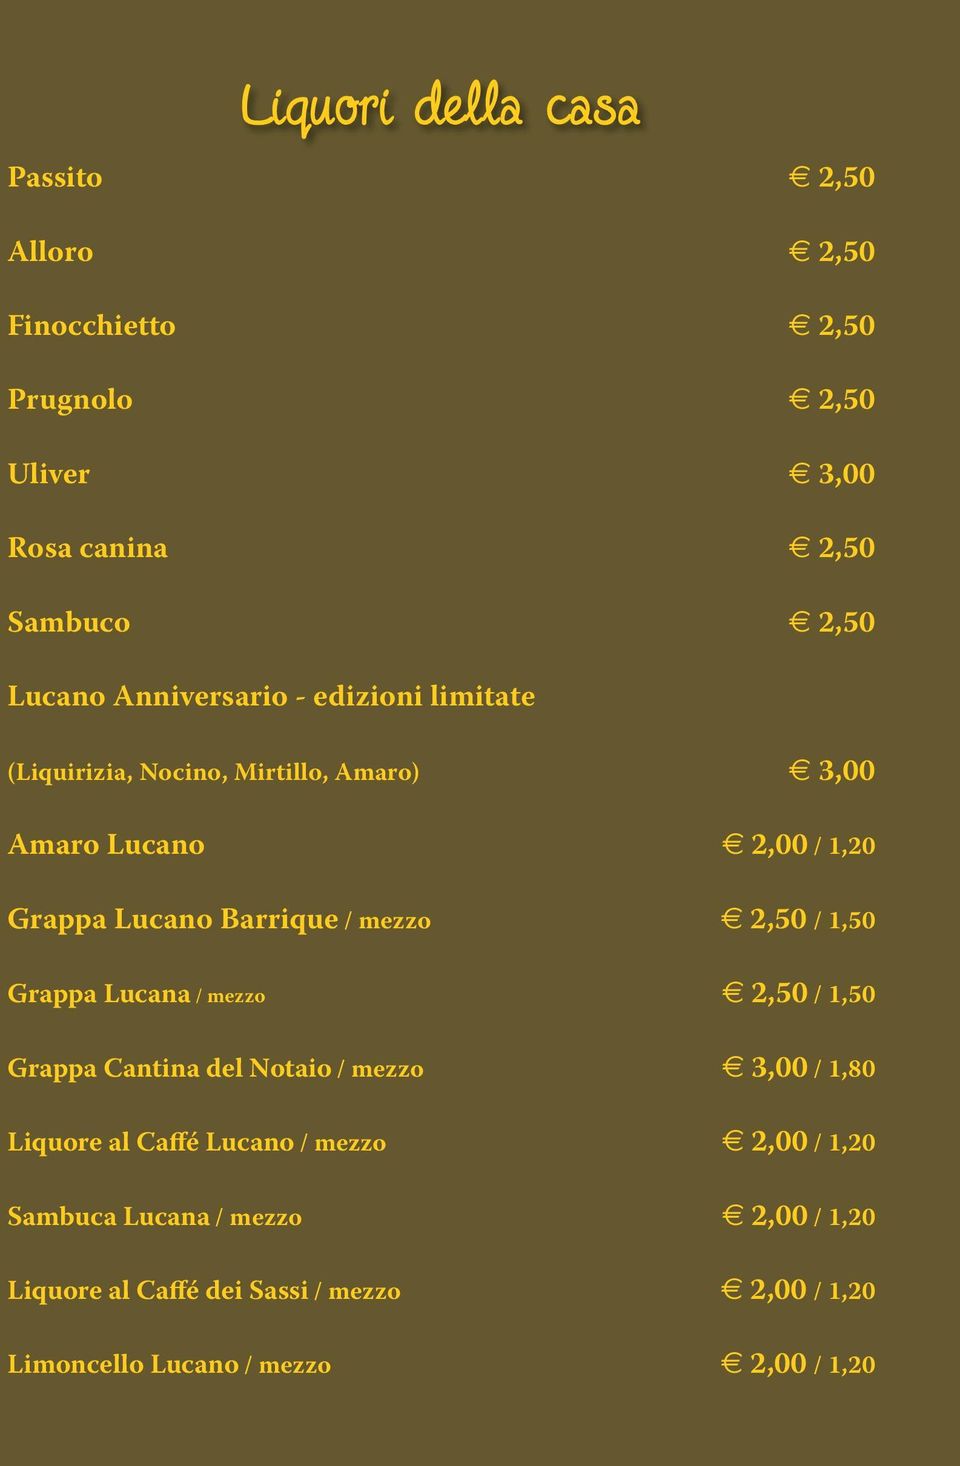 / mezzo e 2,50 / 1,50 Grappa Lucana / mezzo e 2,50 / 1,50 Grappa Cantina del Notaio / mezzo e 3,00 / 1,80 Liquore al Caffé Lucano /